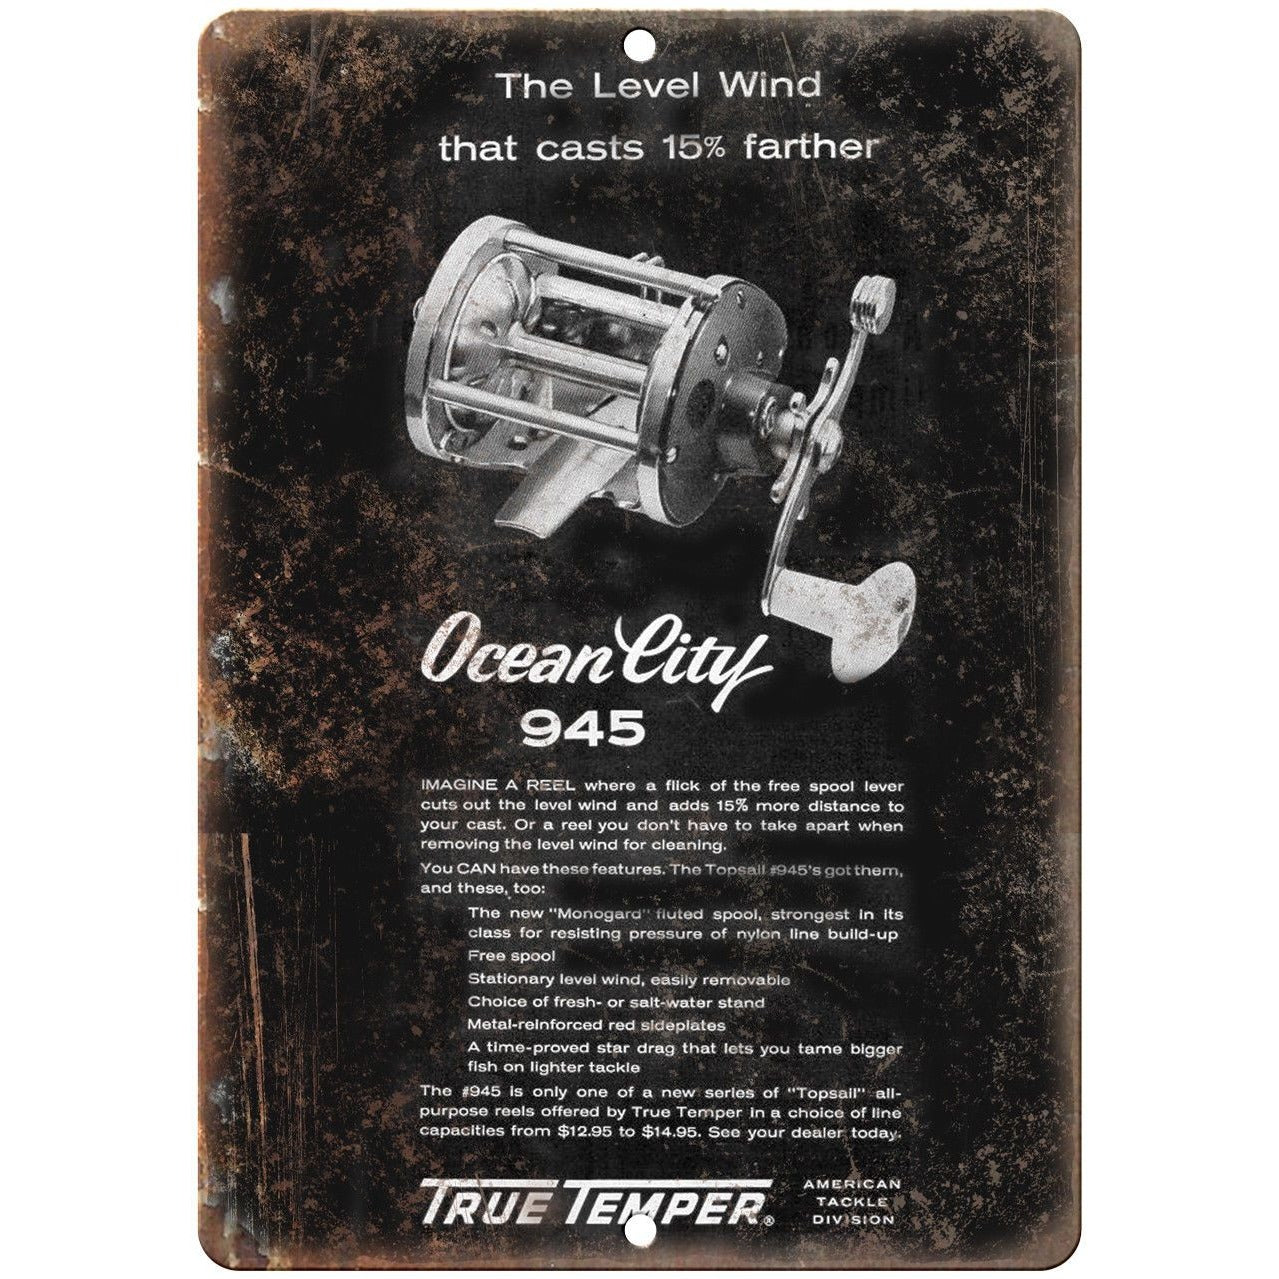 Ocean City Fishing Reel 945 True Temper Ad - 10' x 7 Reproduction Me –  Rusty Walls Sign Shop